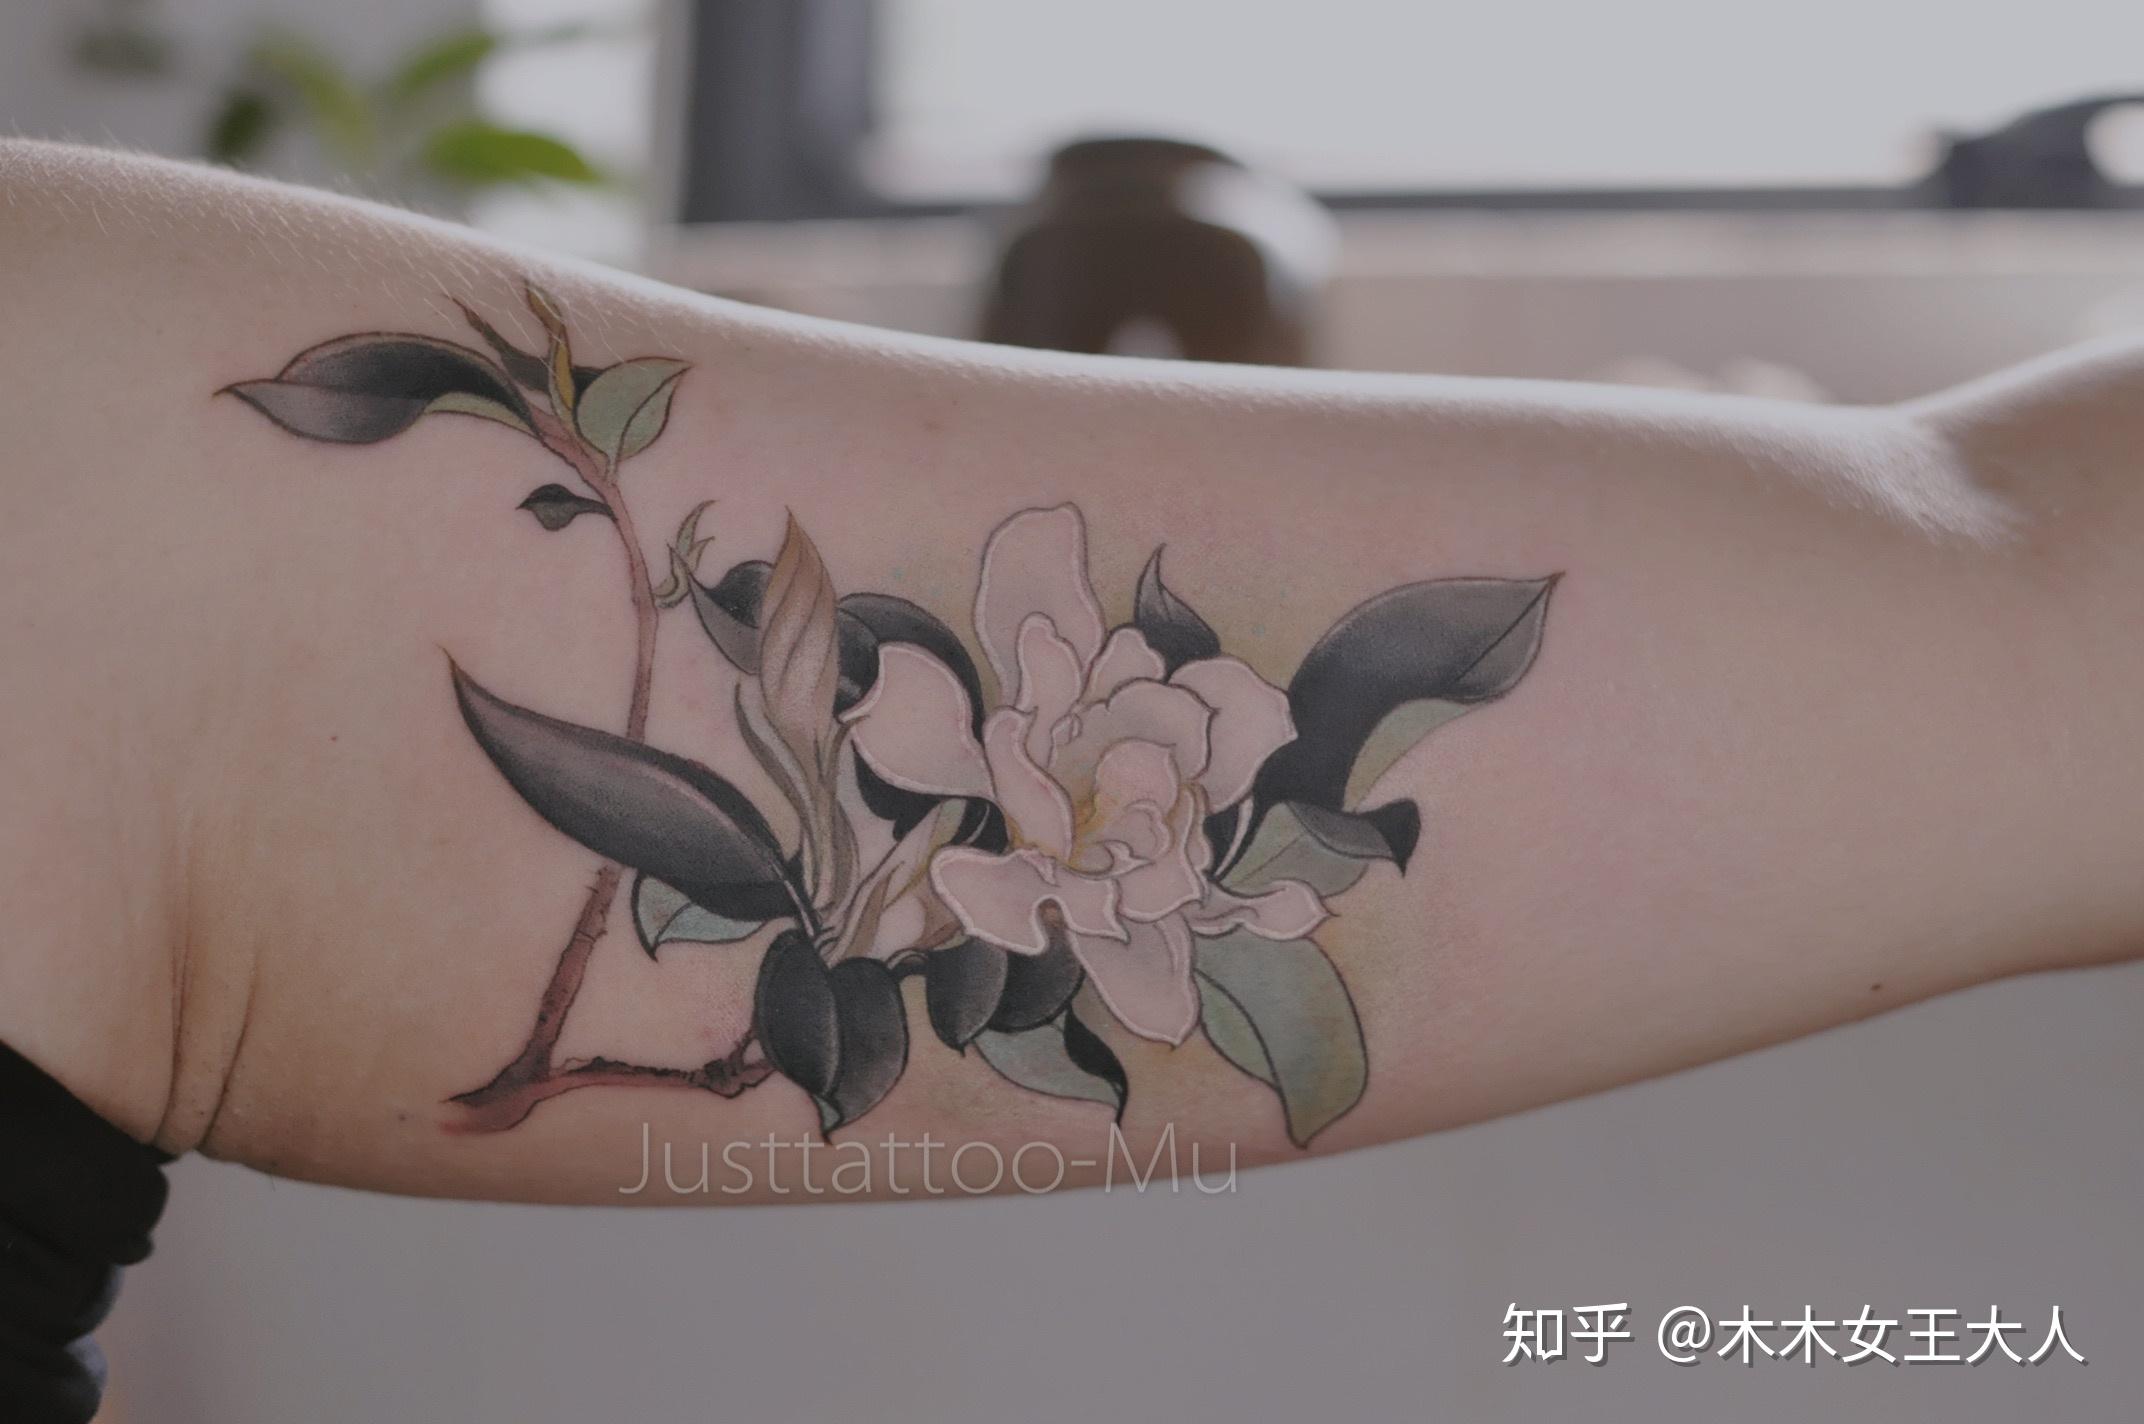 广州腾先生手臂的“爱的翅膀”纹身图案 - 广州纹彩刺青